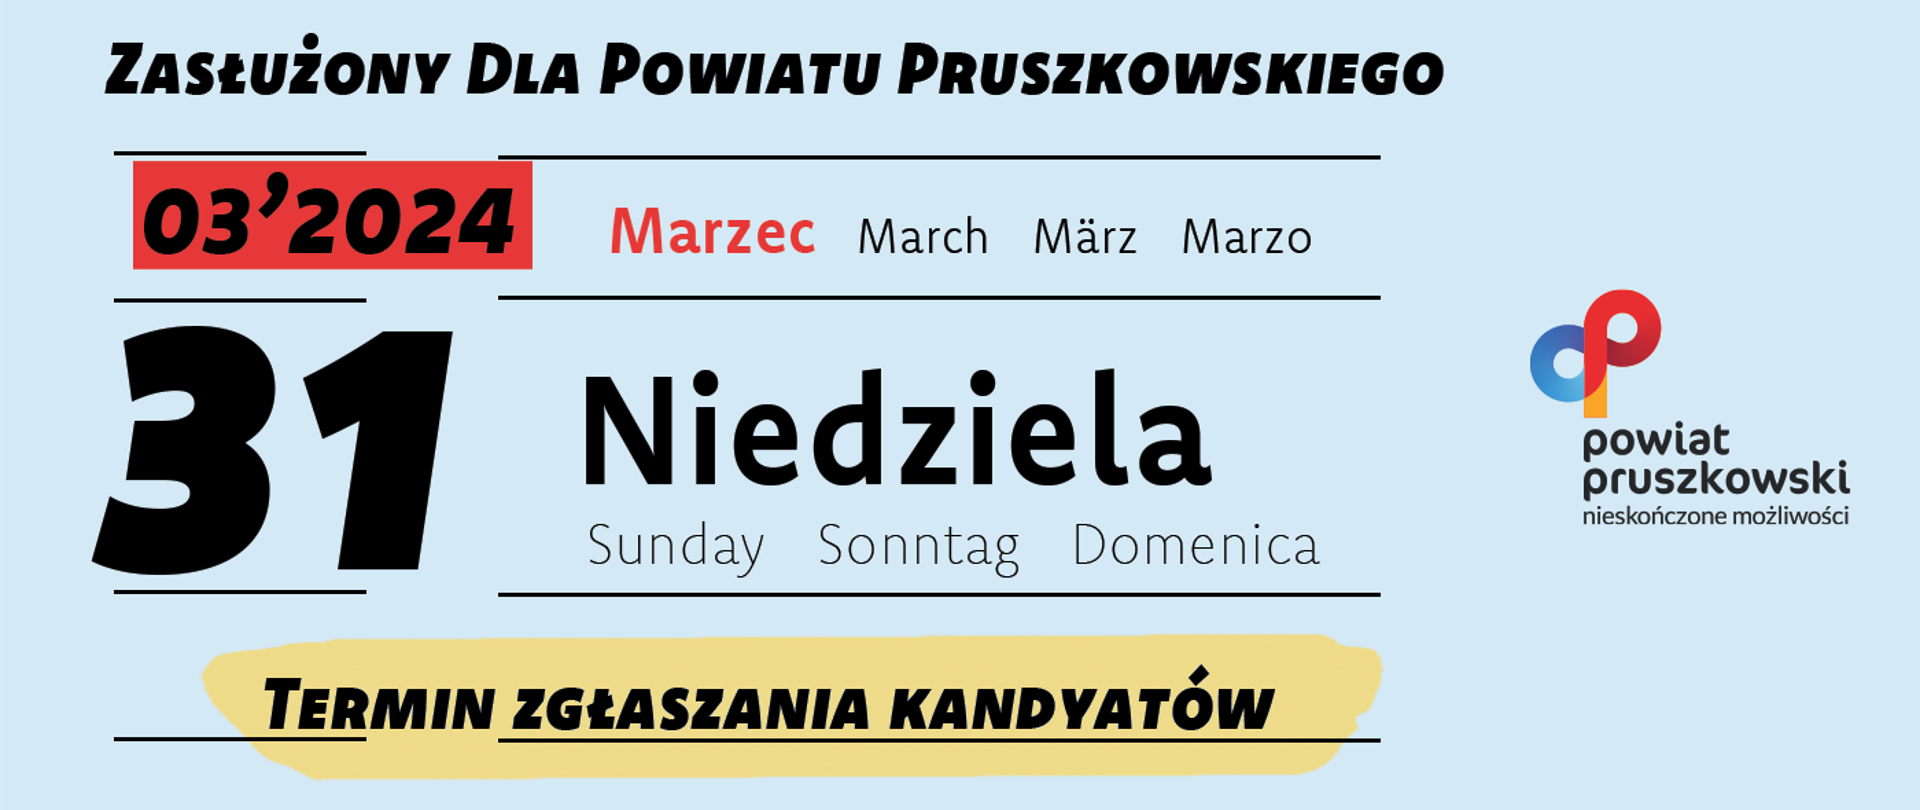 Zasłużony dla Powiatu Pruszkowskiego 2024 - plakat